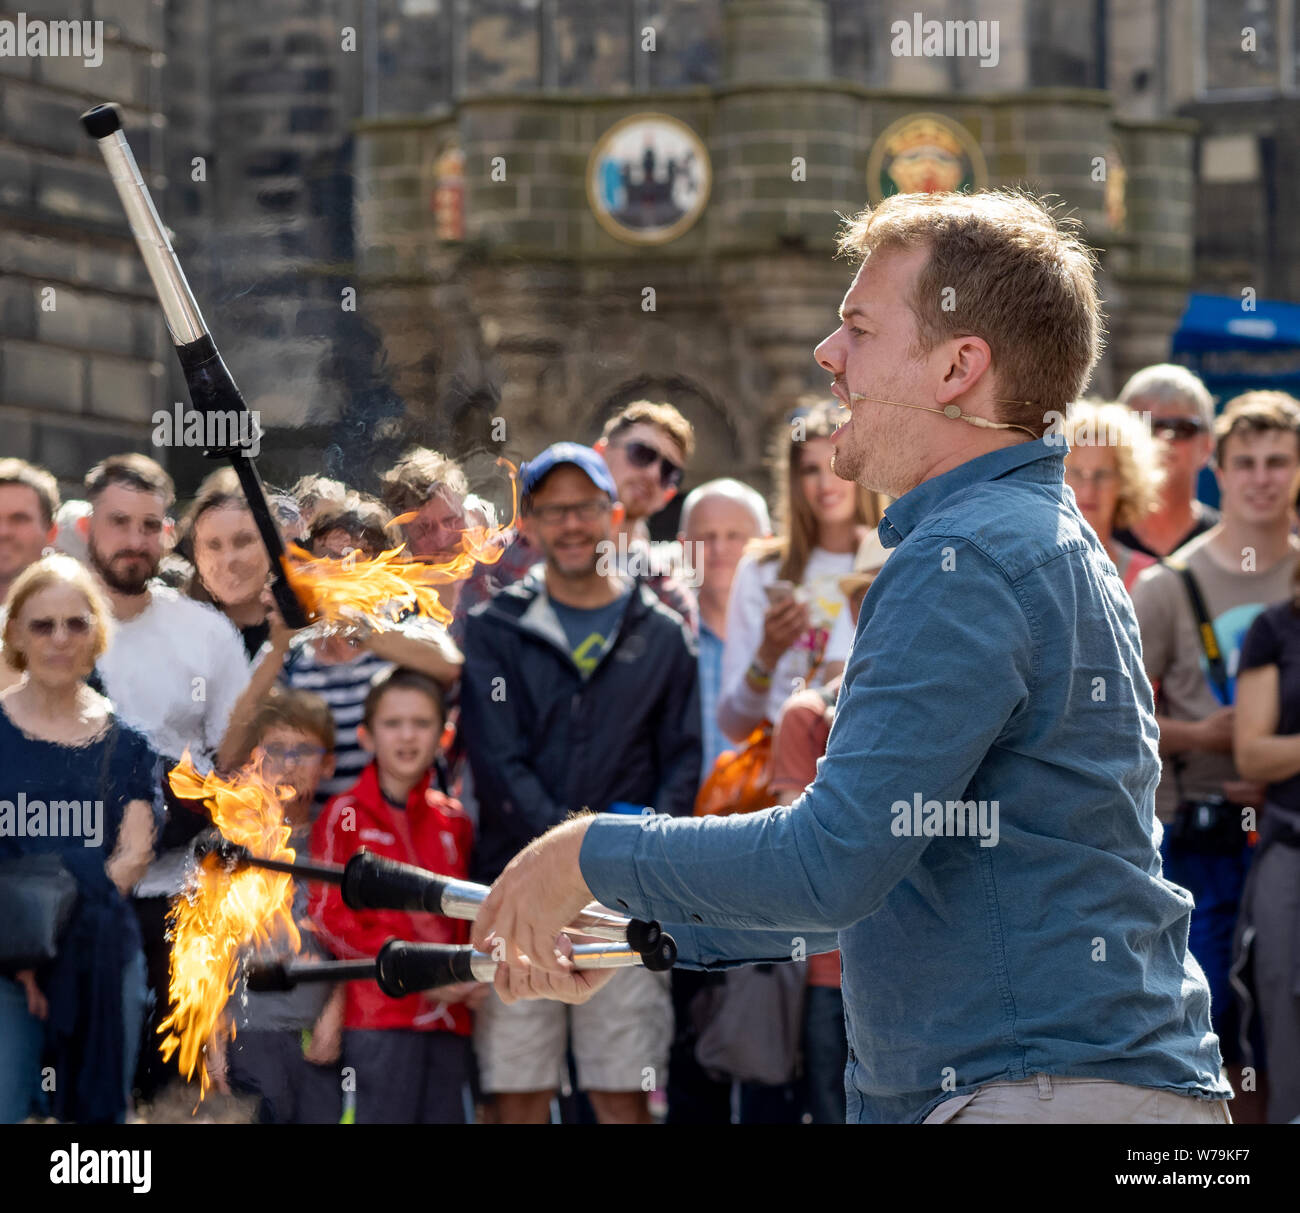 Fire giocoliere a theEdinburgh Festival Fringe 2019 - Il Royal Mile di Edimburgo, Scozia, Regno Unito. Foto Stock